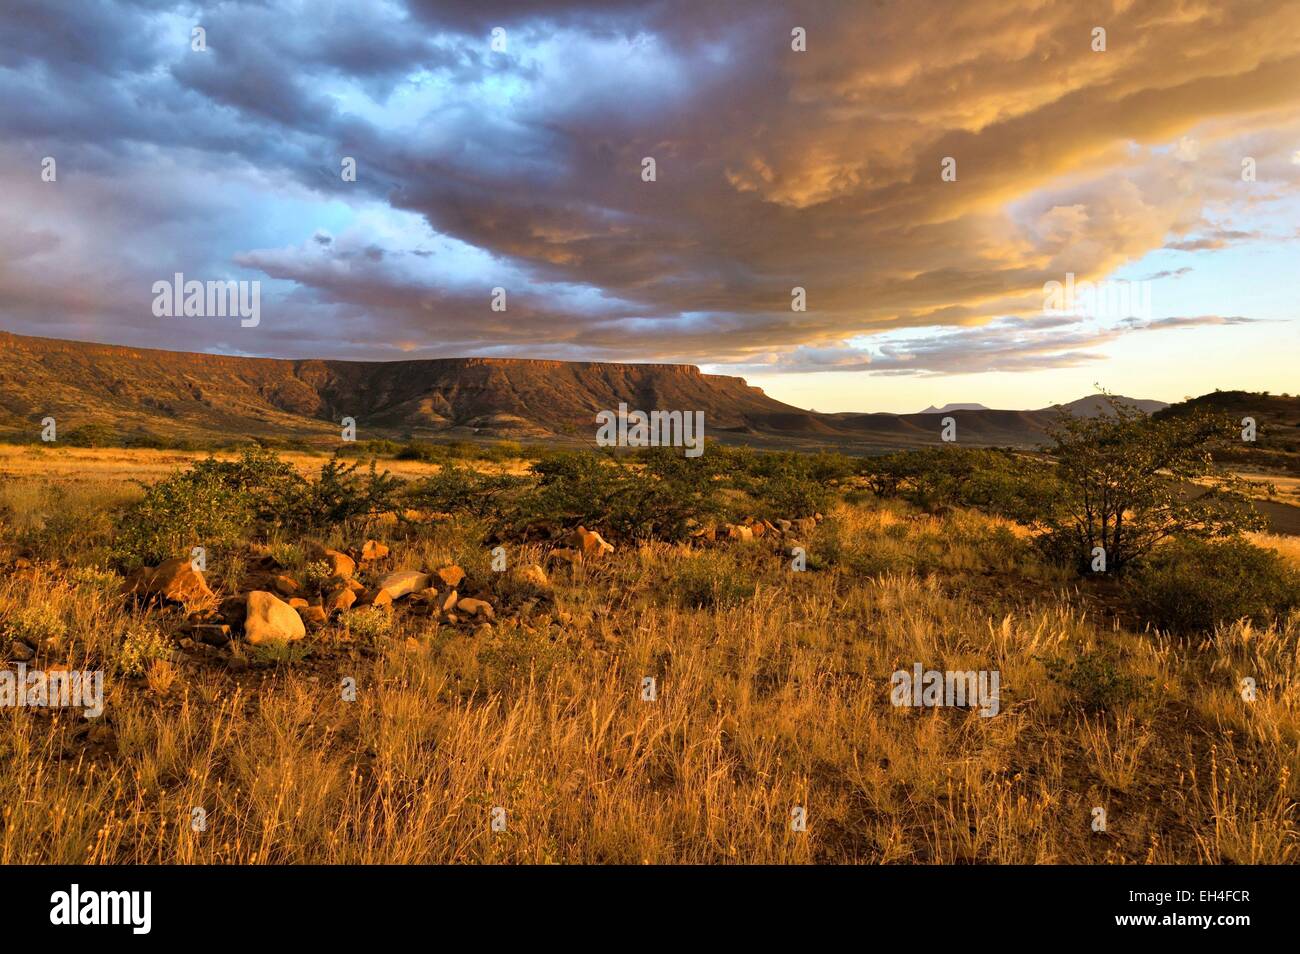 Namibia, Damaraland region, Grootberg Stock Photo